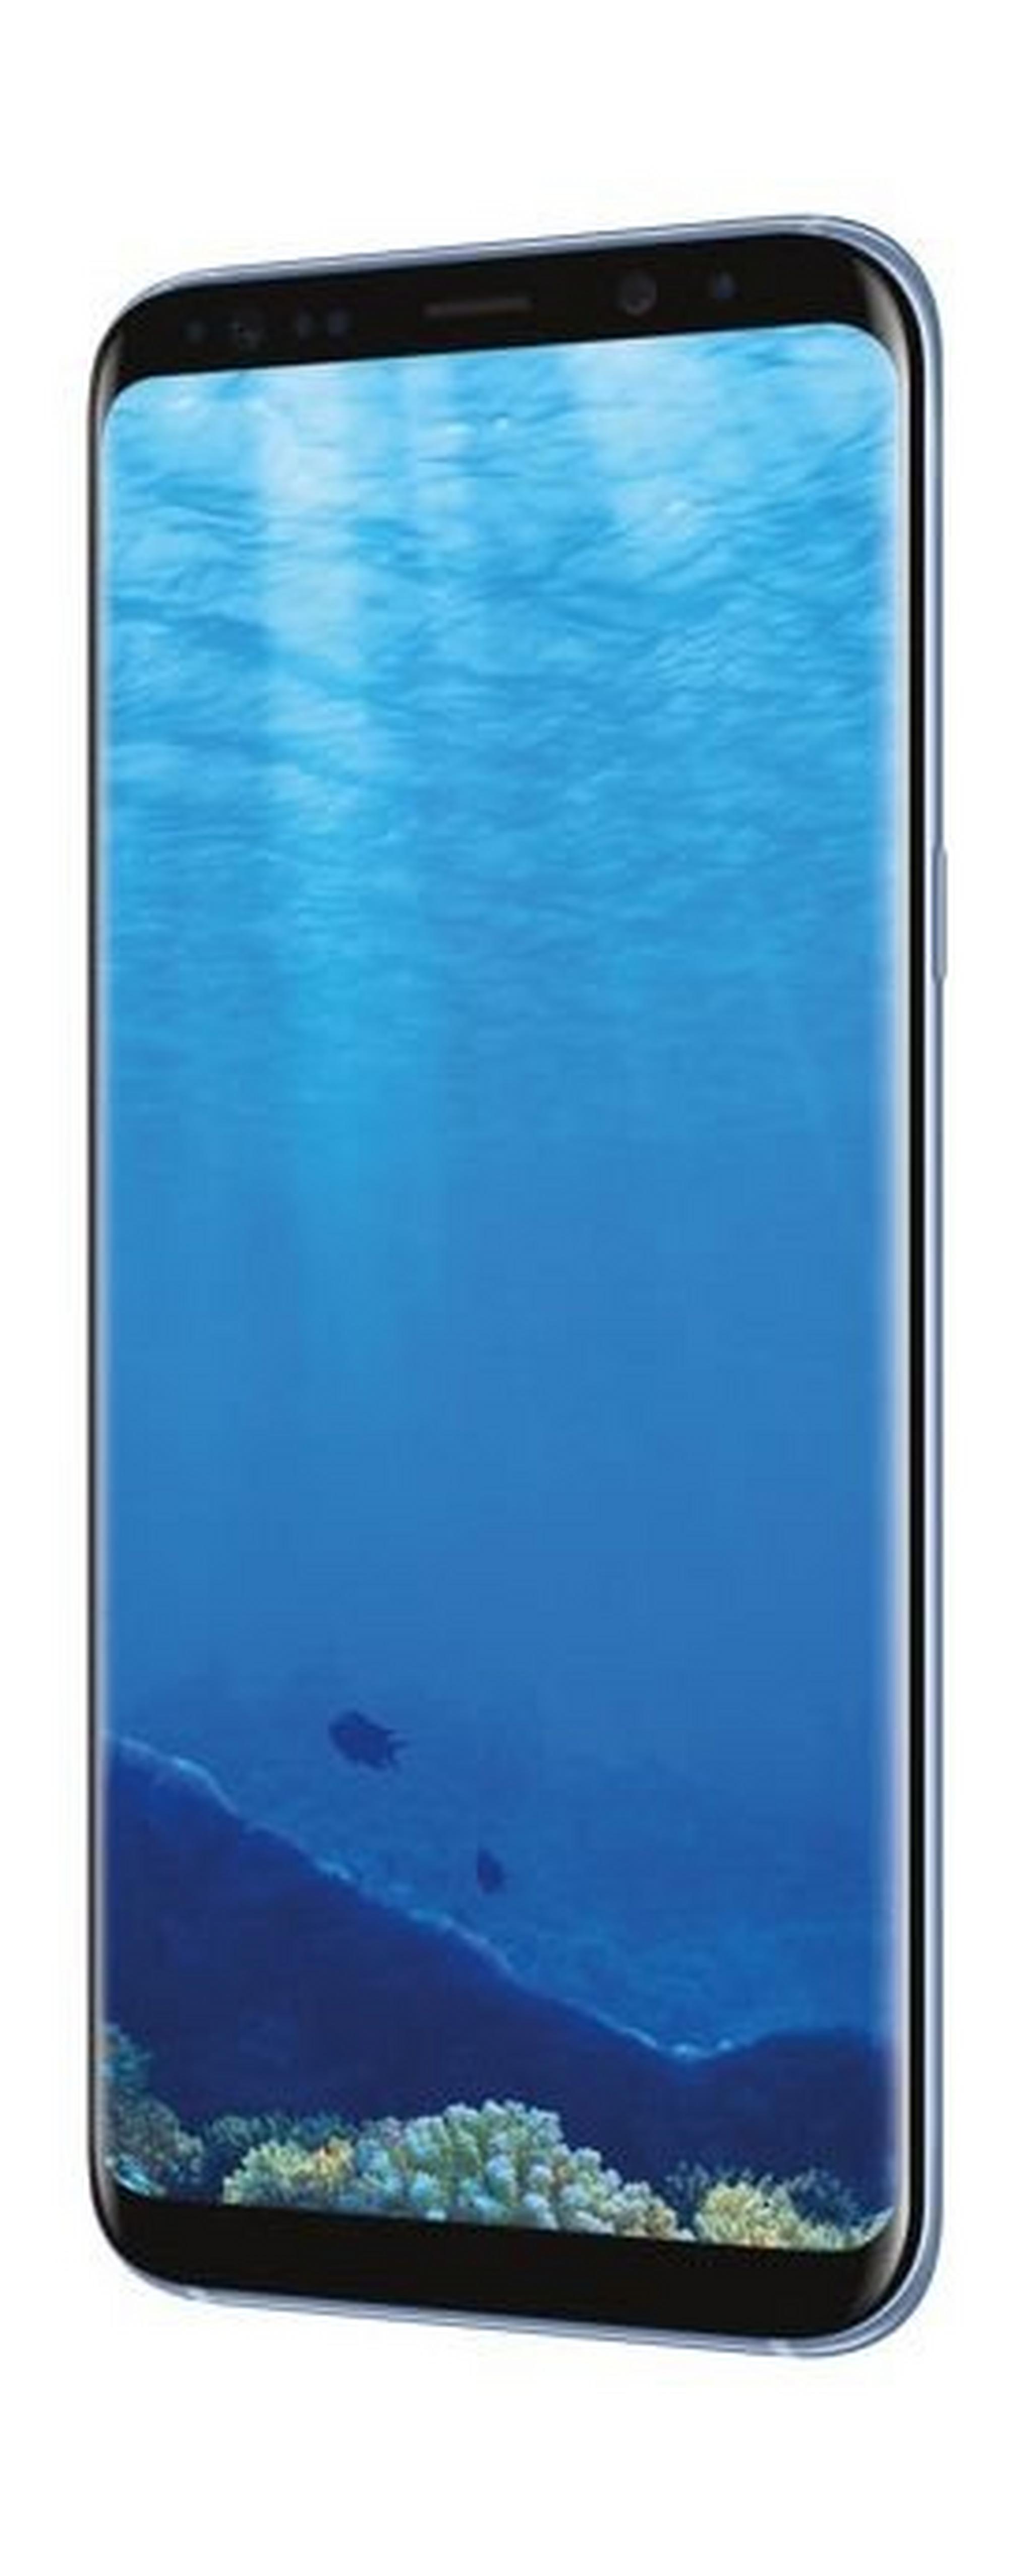 Samsung Galaxy S8 Plus 6.2-inch Smartphone, 64GB 12MP 4G LTE Dual Sim – Blue